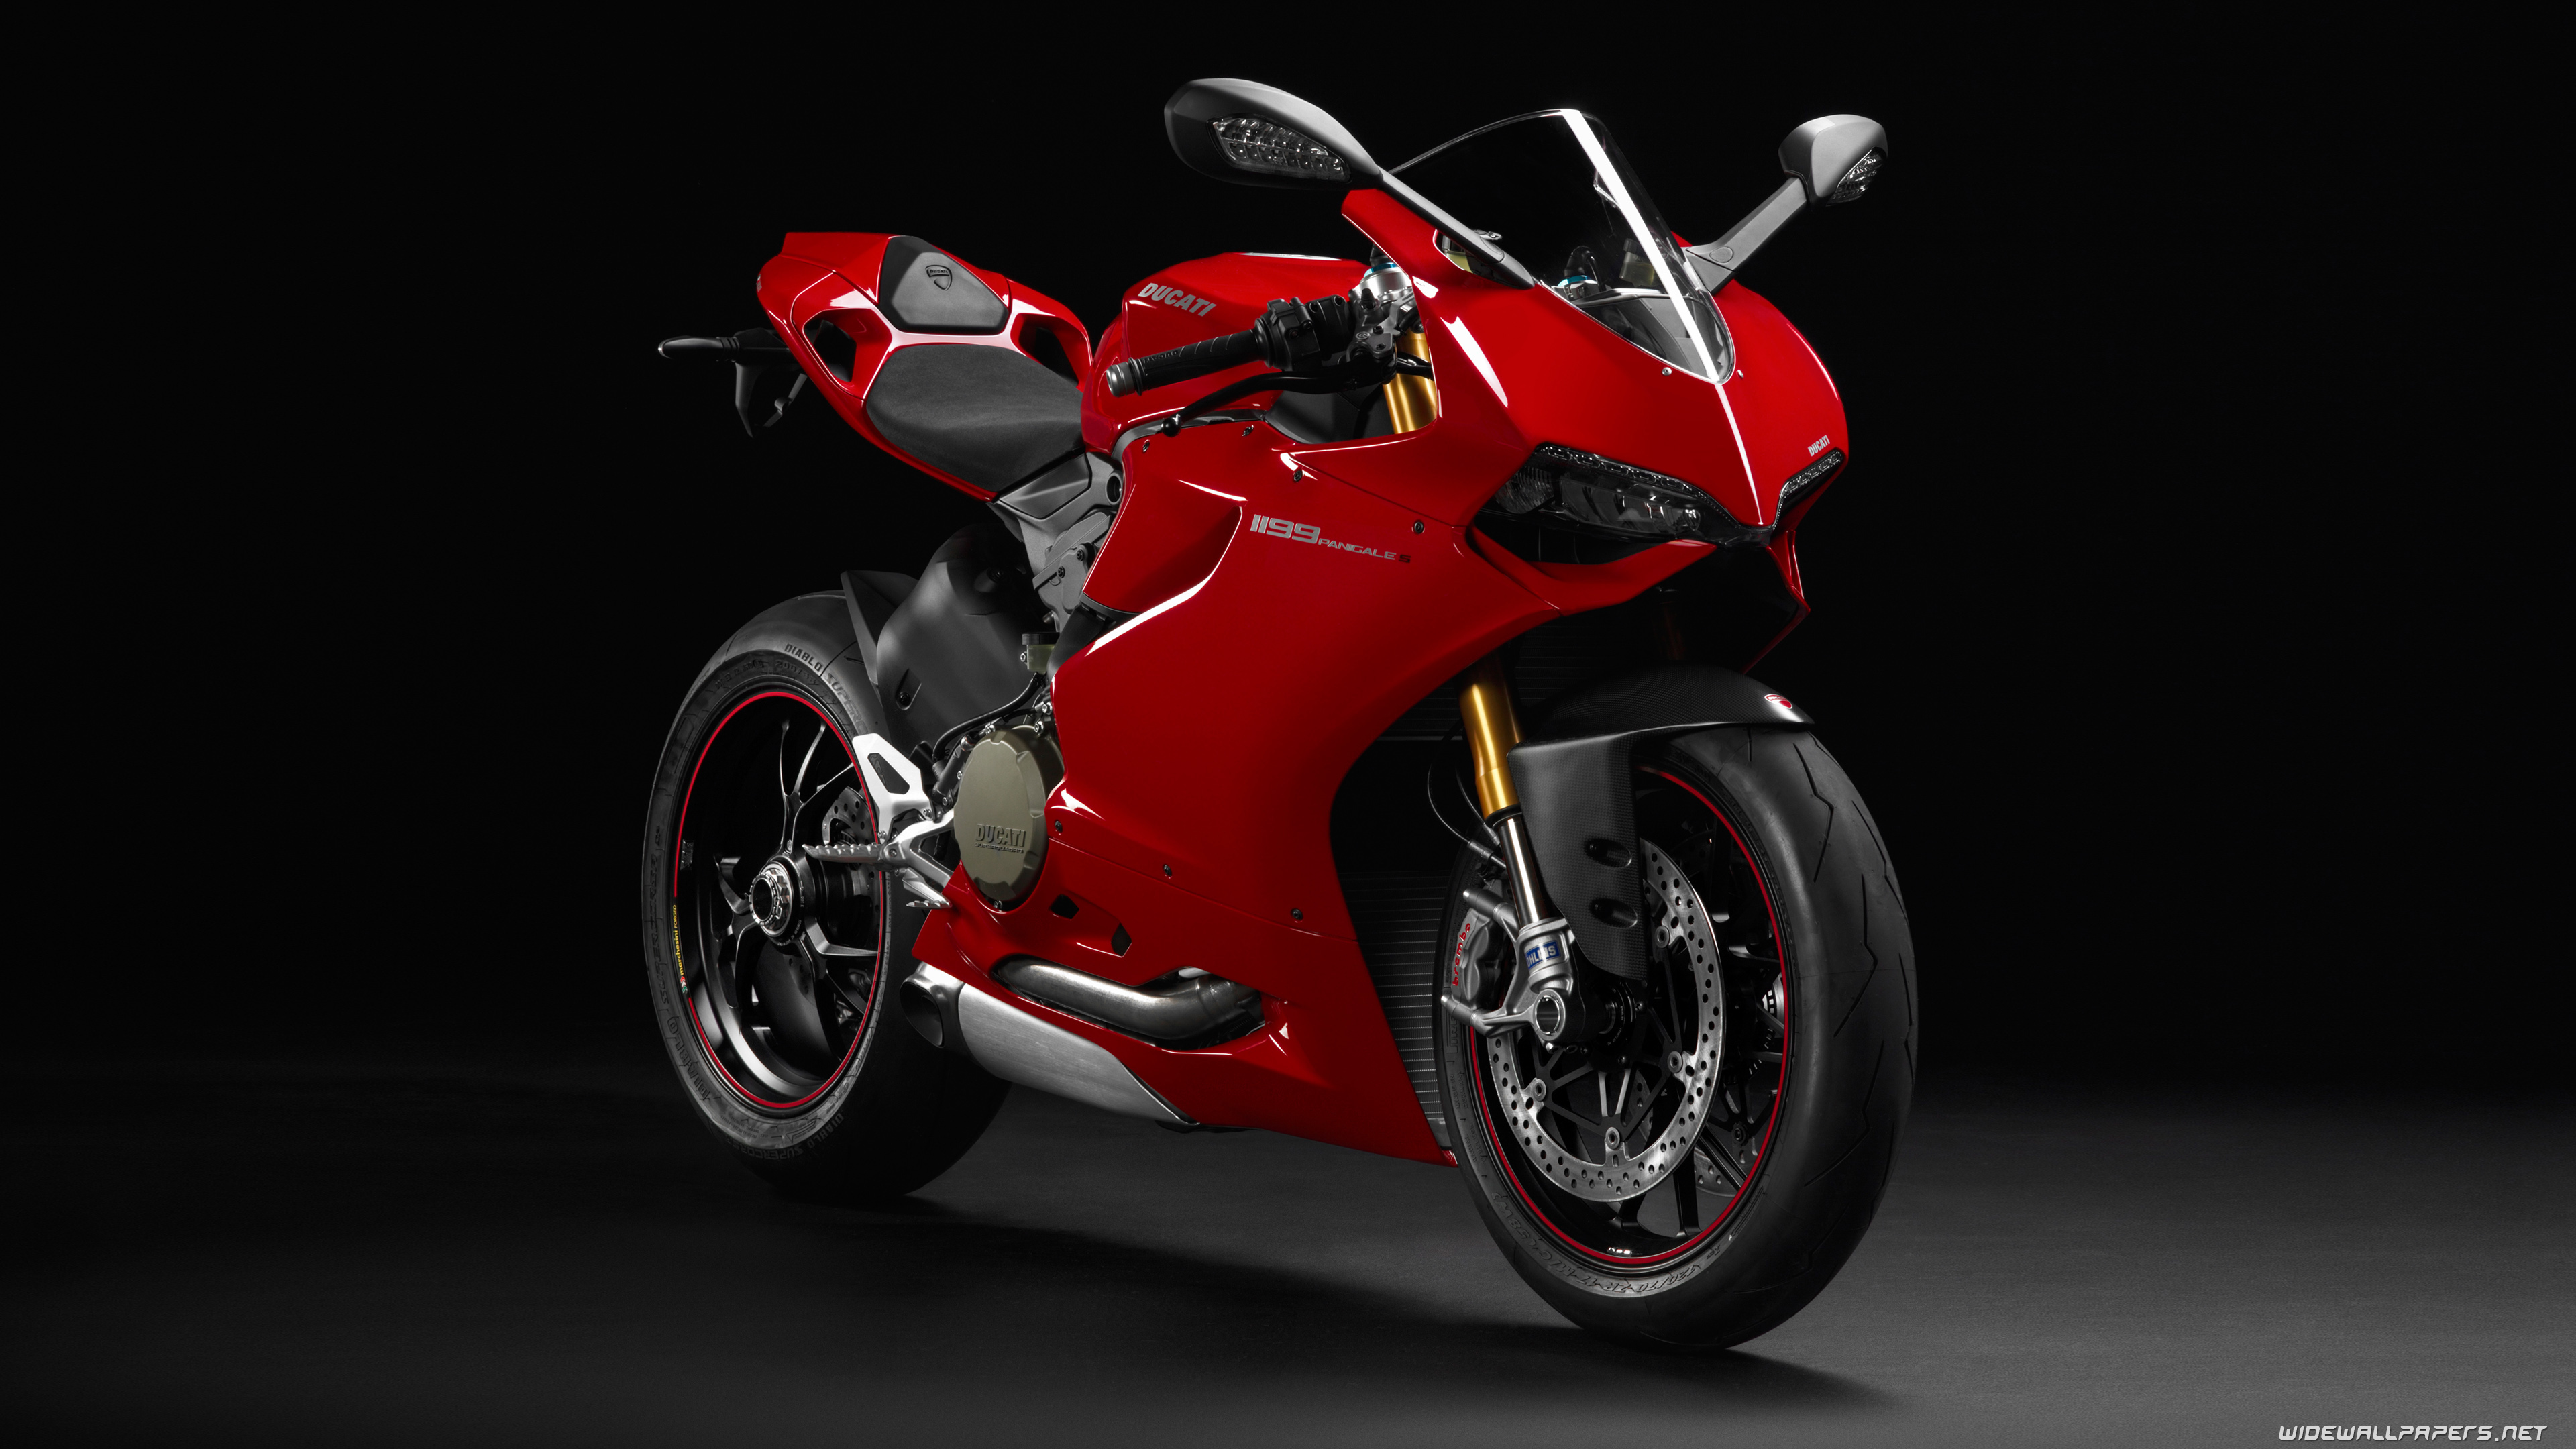 Ducati Superbike 1199 Panigale motorcycle desktop